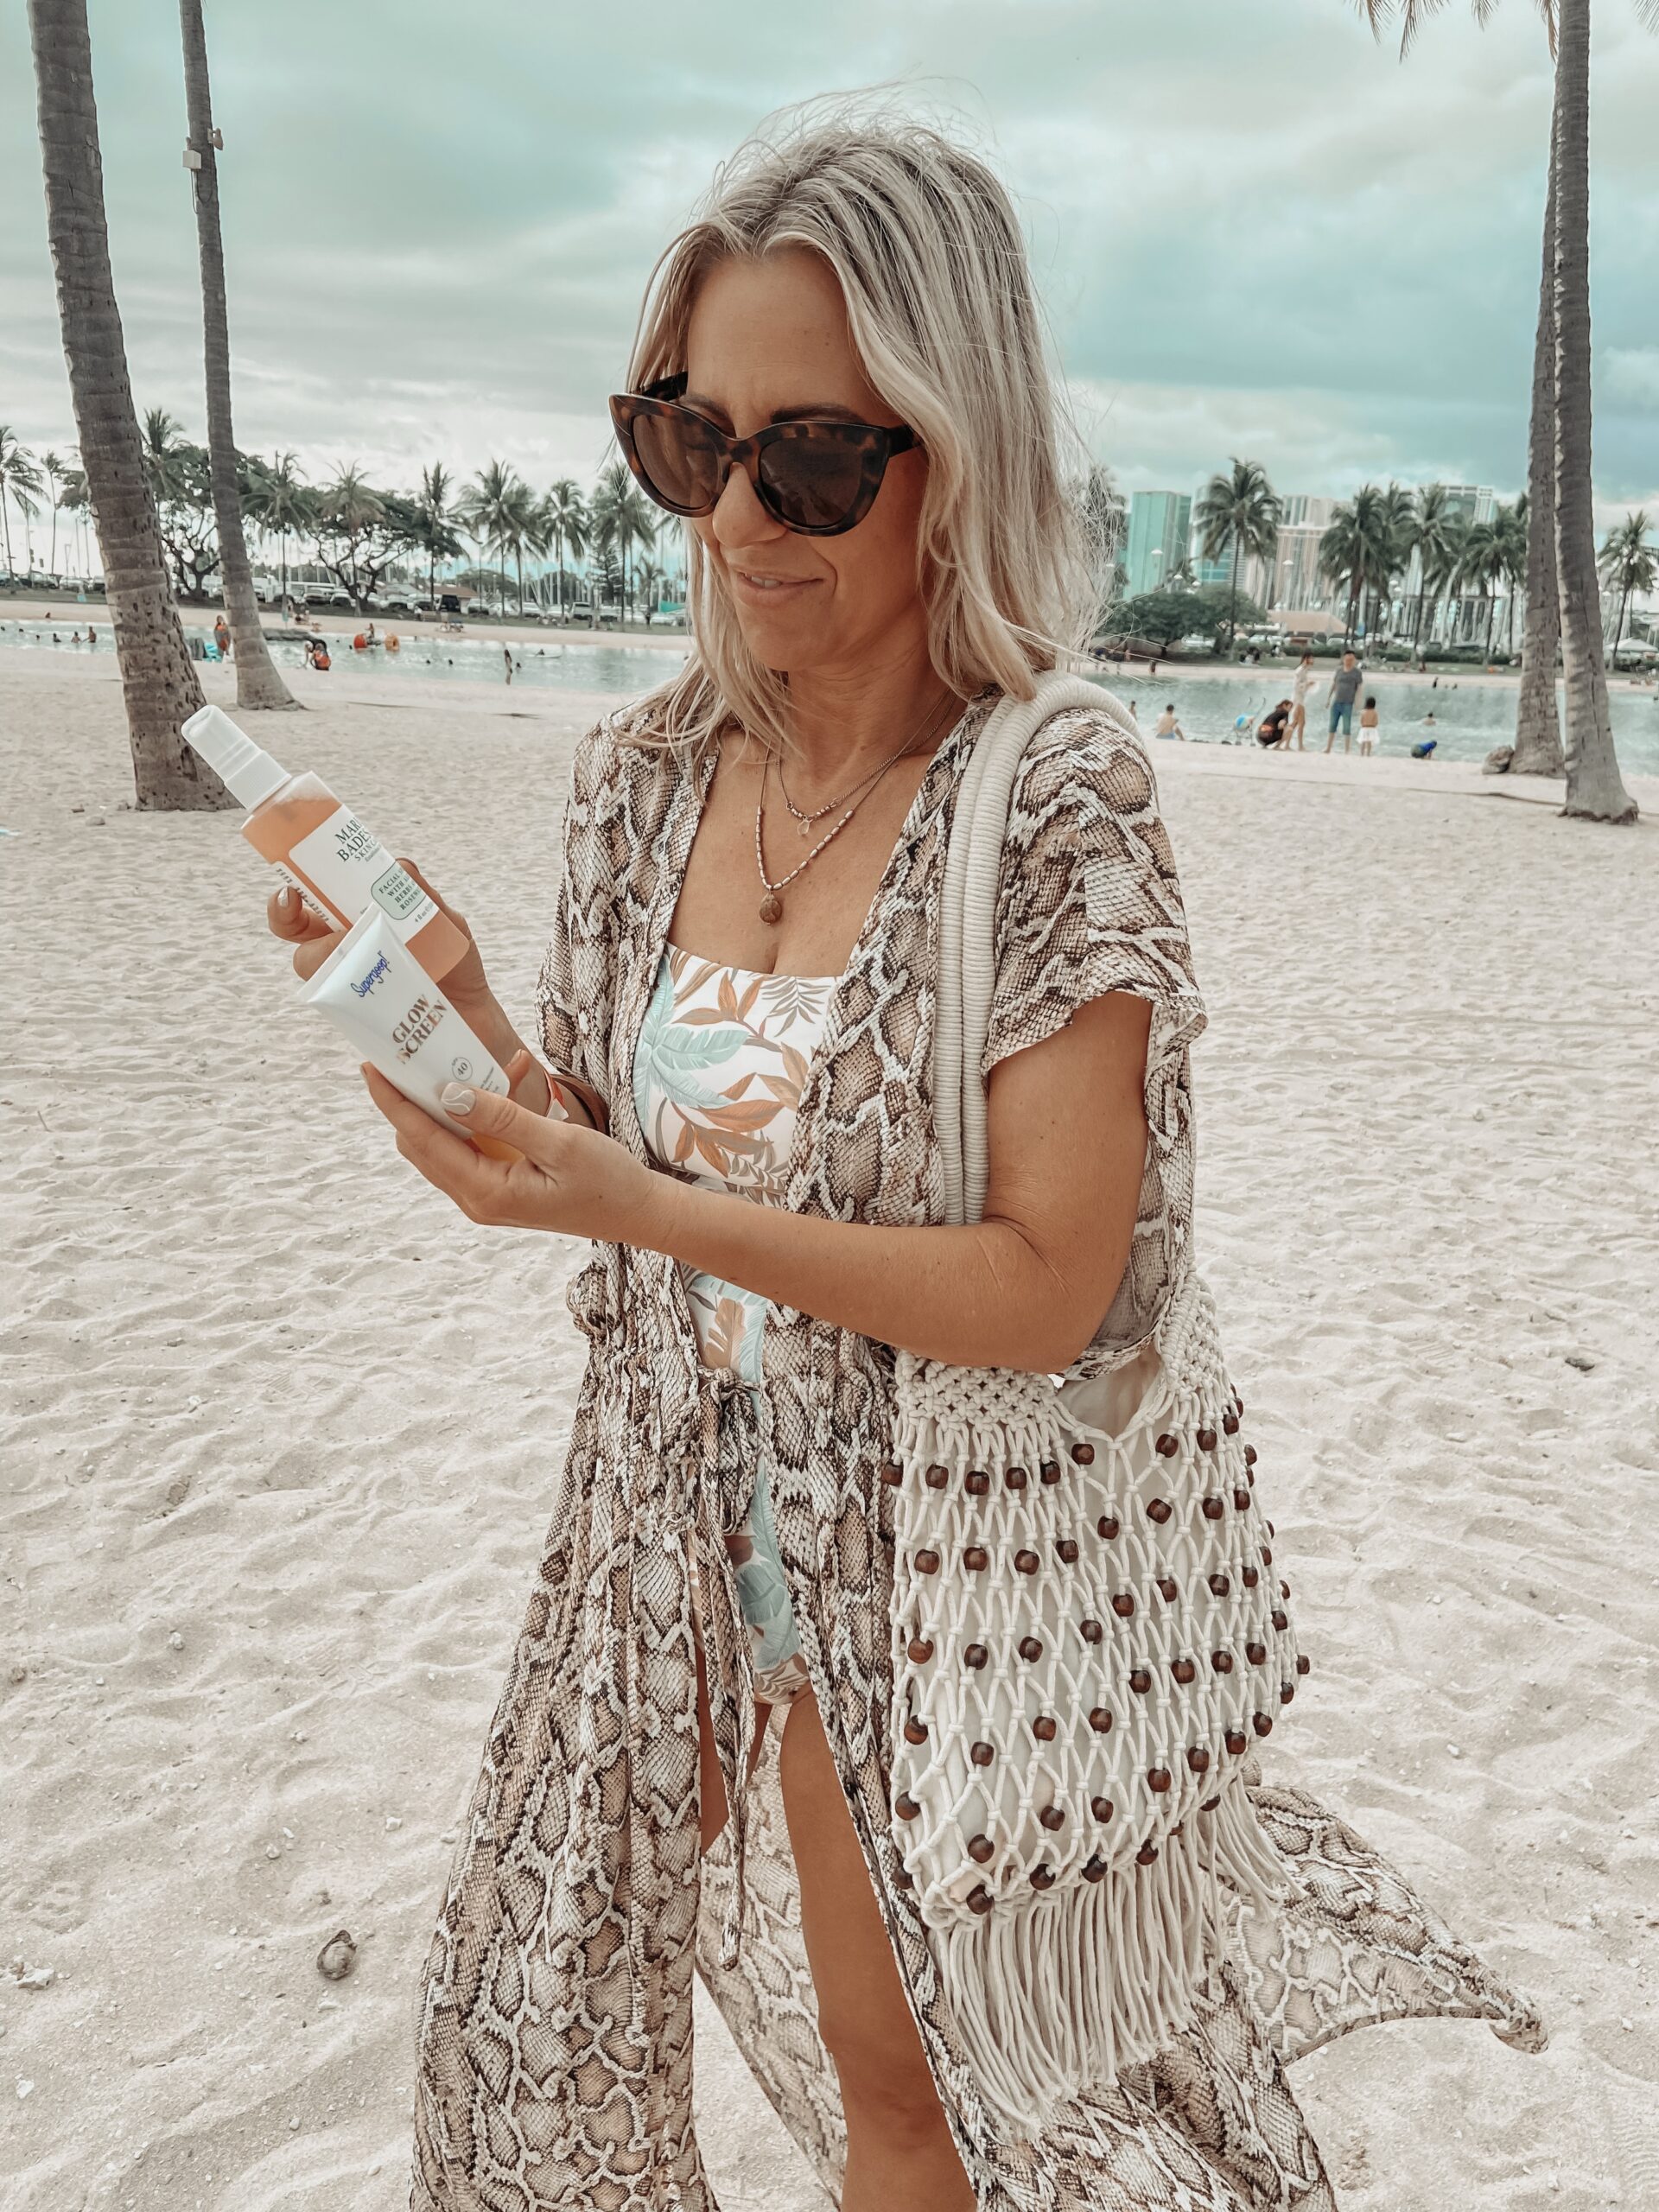 BEACH BEAUTY FAVORITES FROM WALMART-Jaclyn De Leon Style. Sharing my favorite beach beauty essentials from Walmart. Affordable beauty favorites.